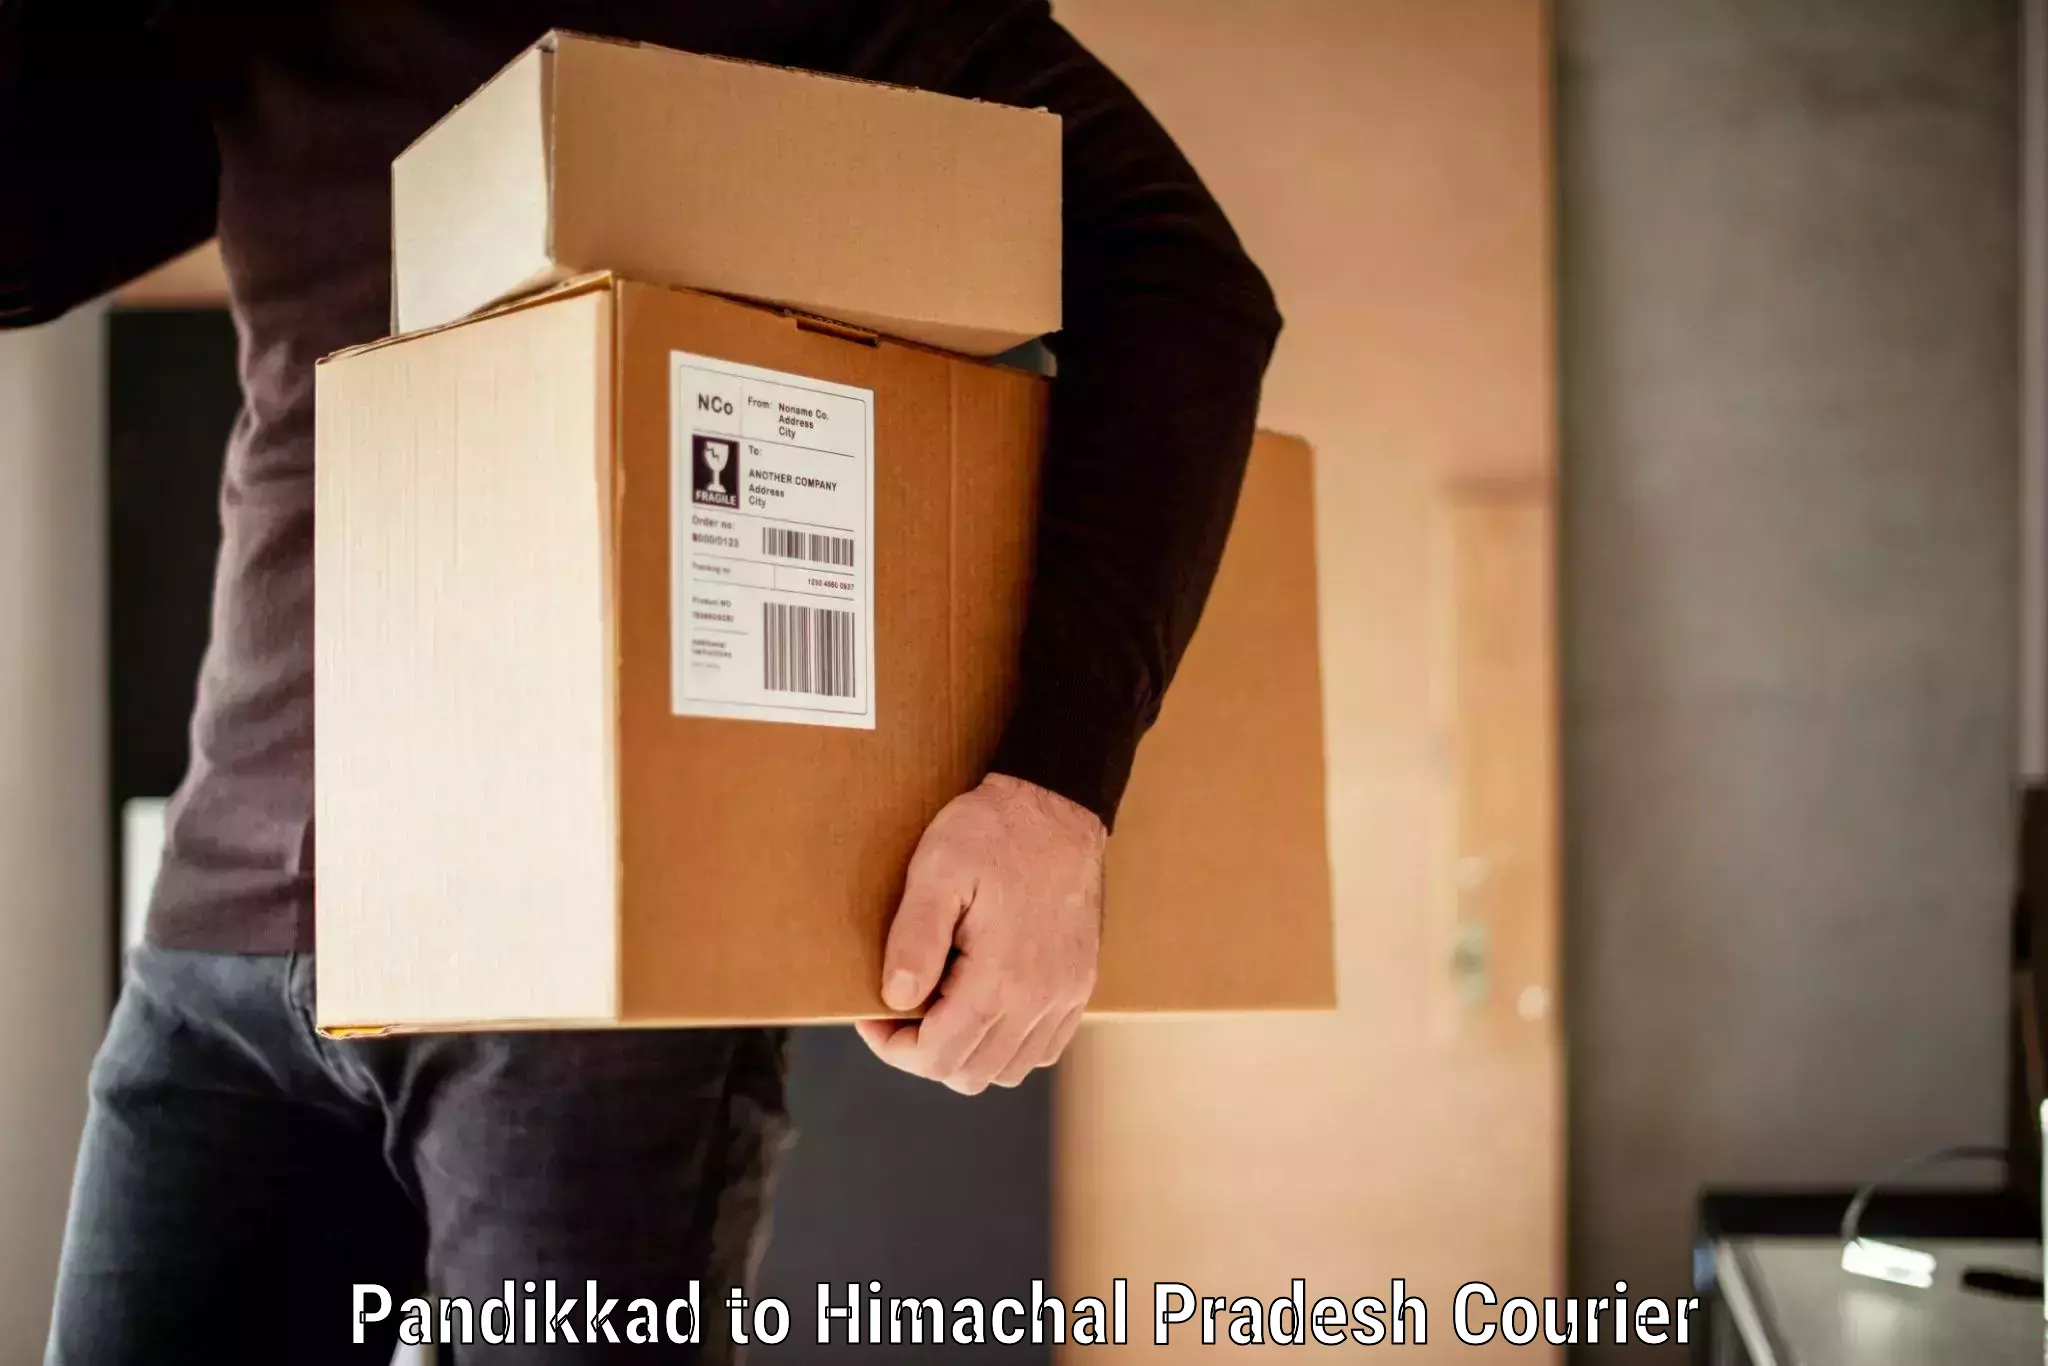 Express baggage shipping Pandikkad to Himachal Pradesh